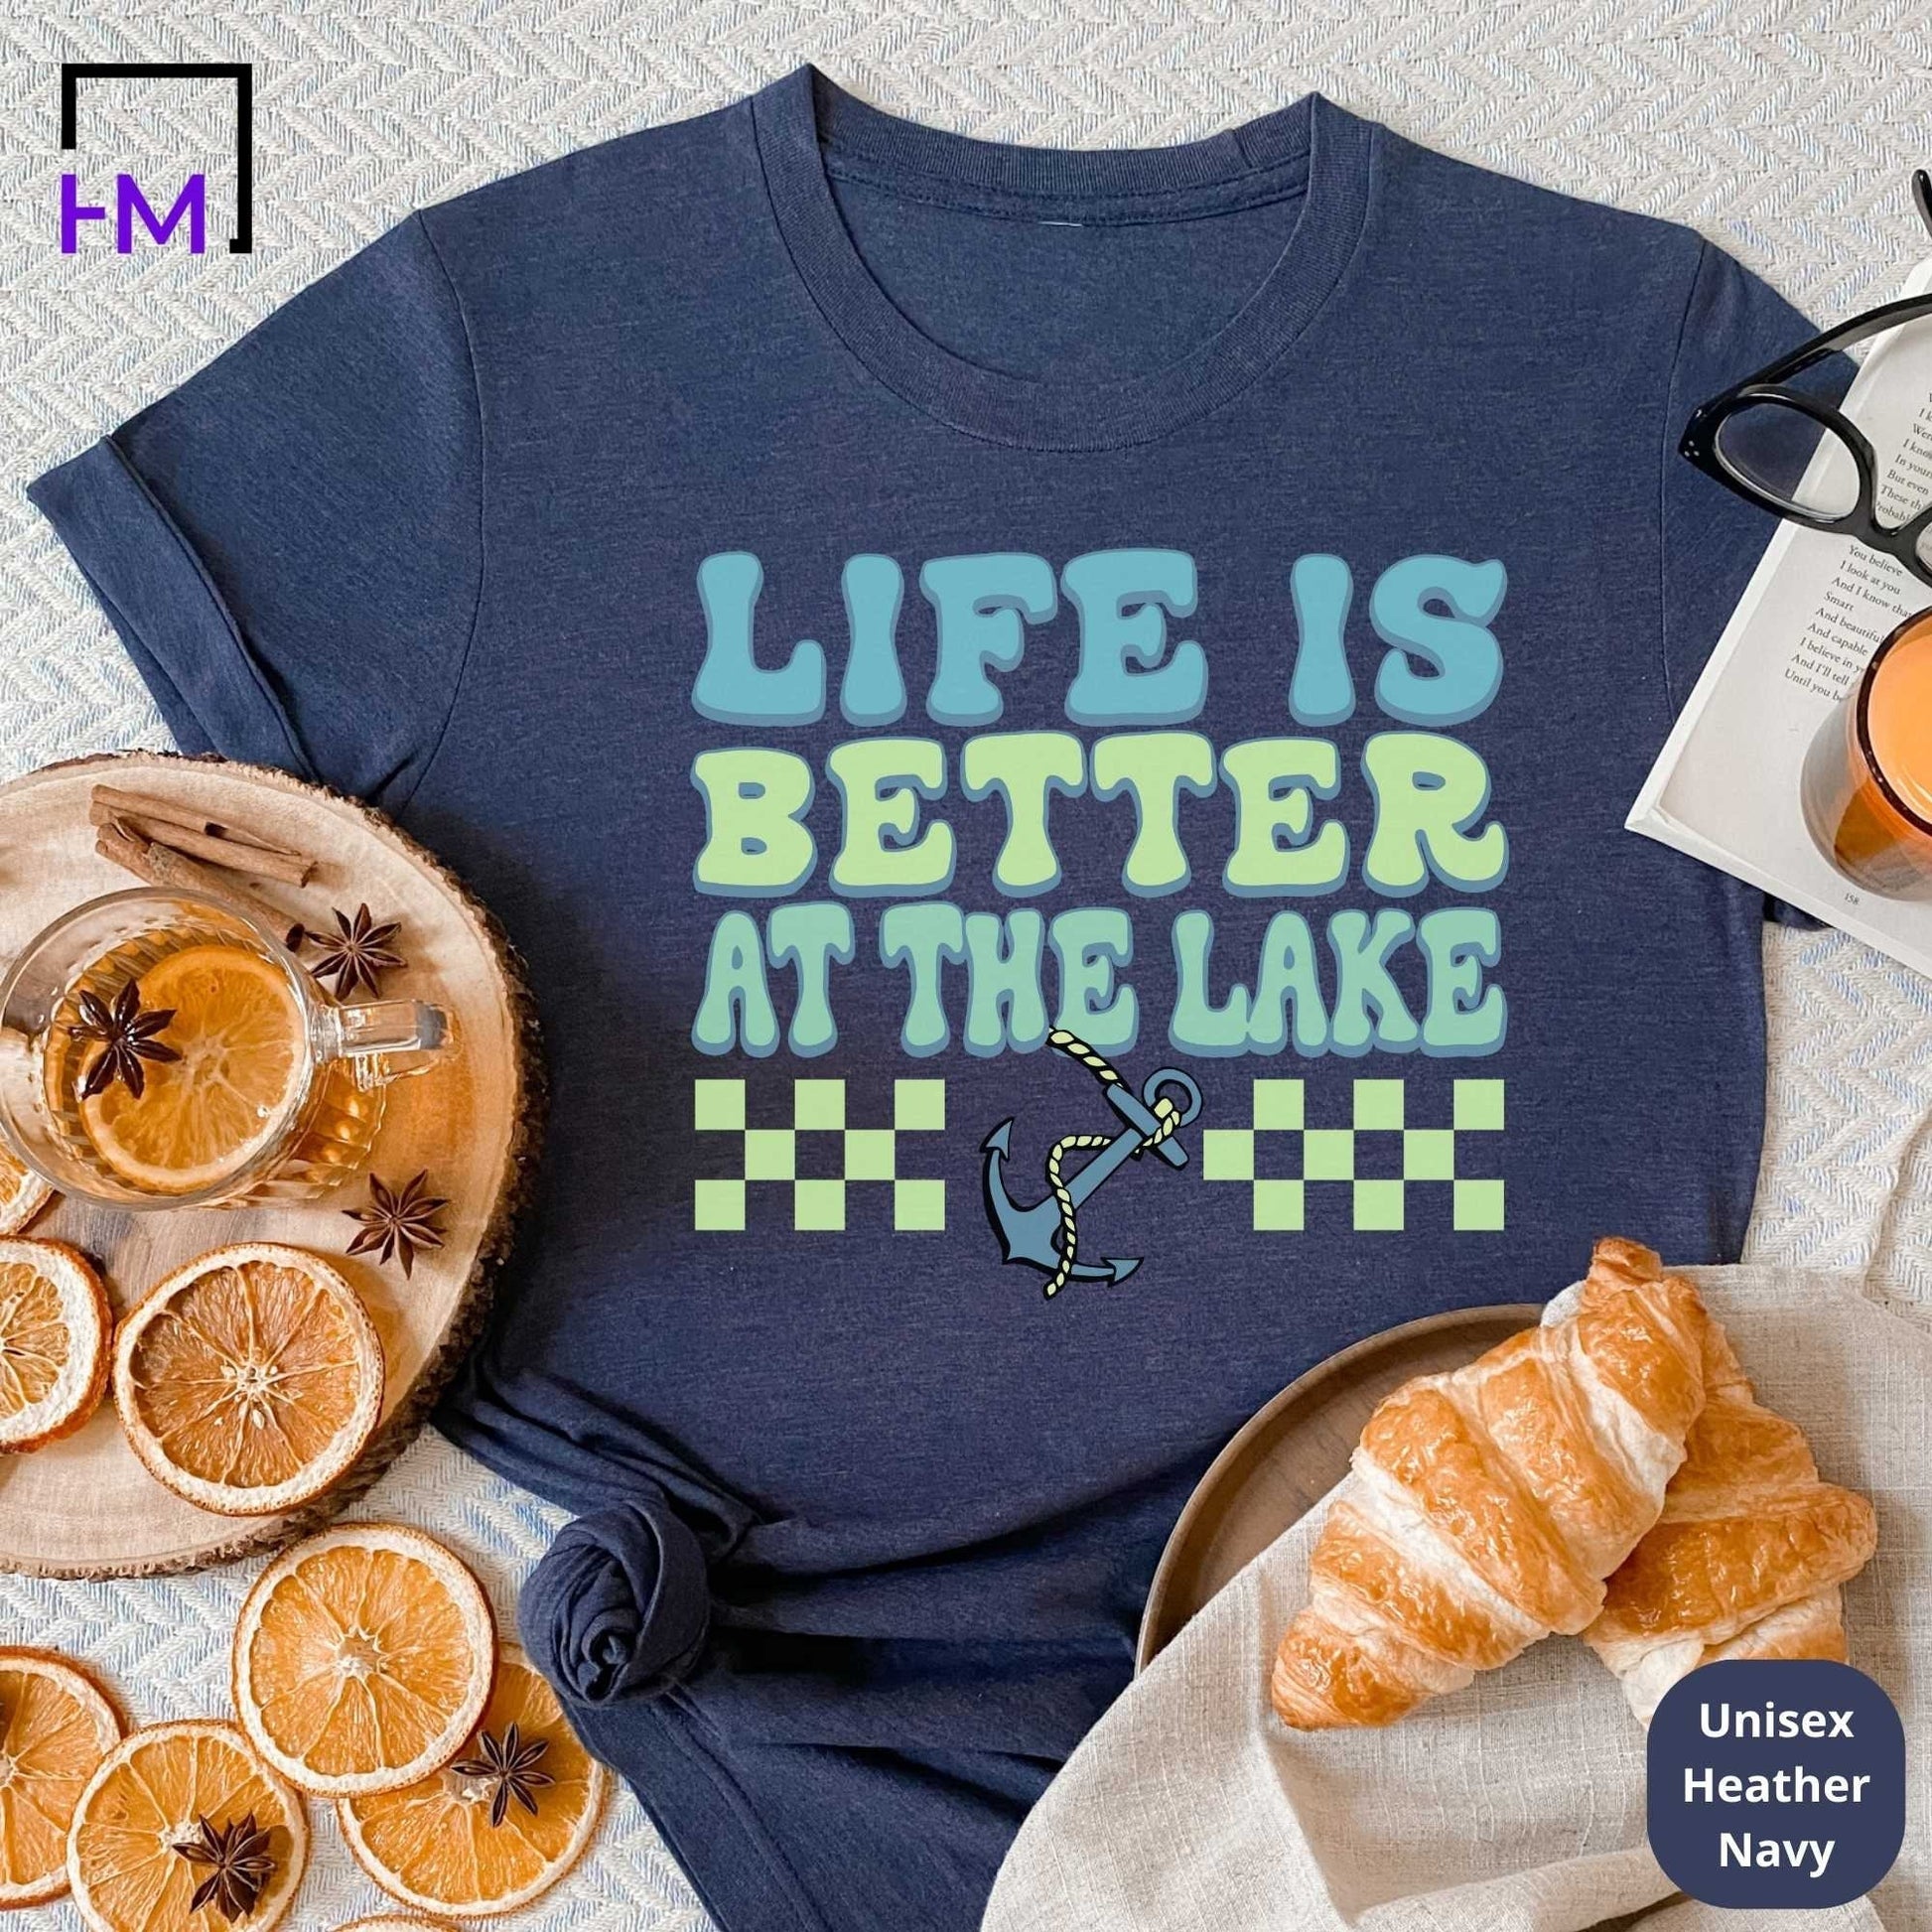 Lake Life Shirt, Lake Trip Shirts for Girls, Gift for Lake Lovers, Girls Trip Shirts, Summer Shirt for Women, Boating Shirt, Kayaking Shirt HMDesignStudioUS